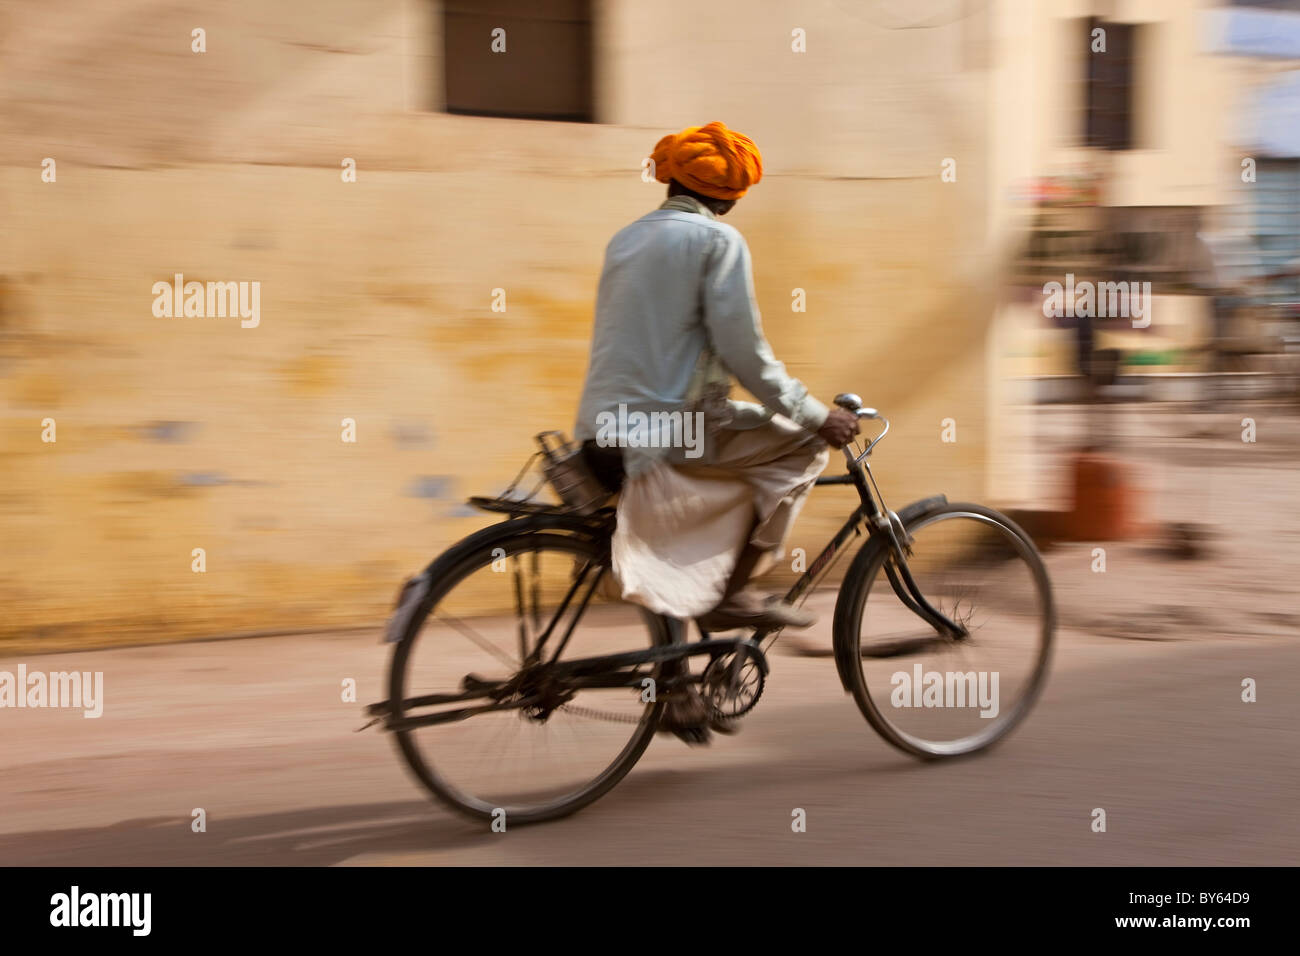 Rajasthan man on bicycle, Bundi, Rajasthan, India Stock Photo